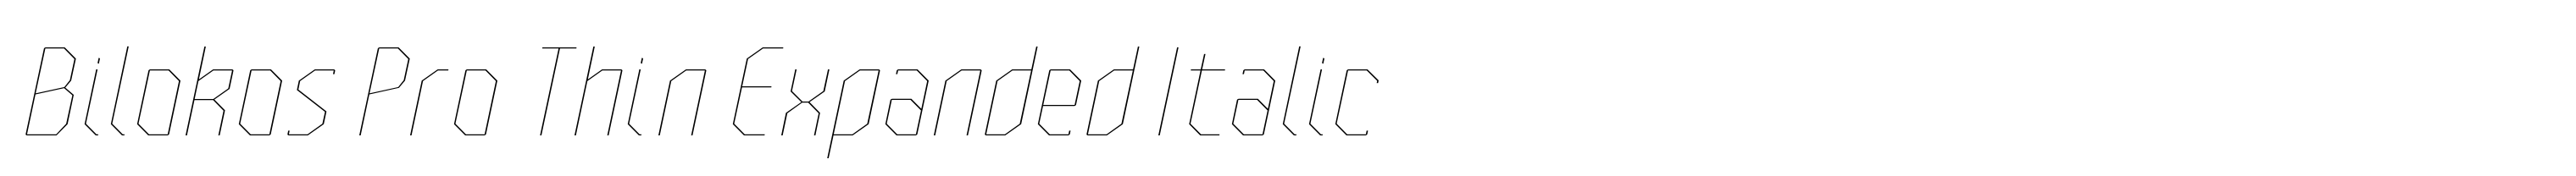 Bilokos Pro Thin Expanded Italic